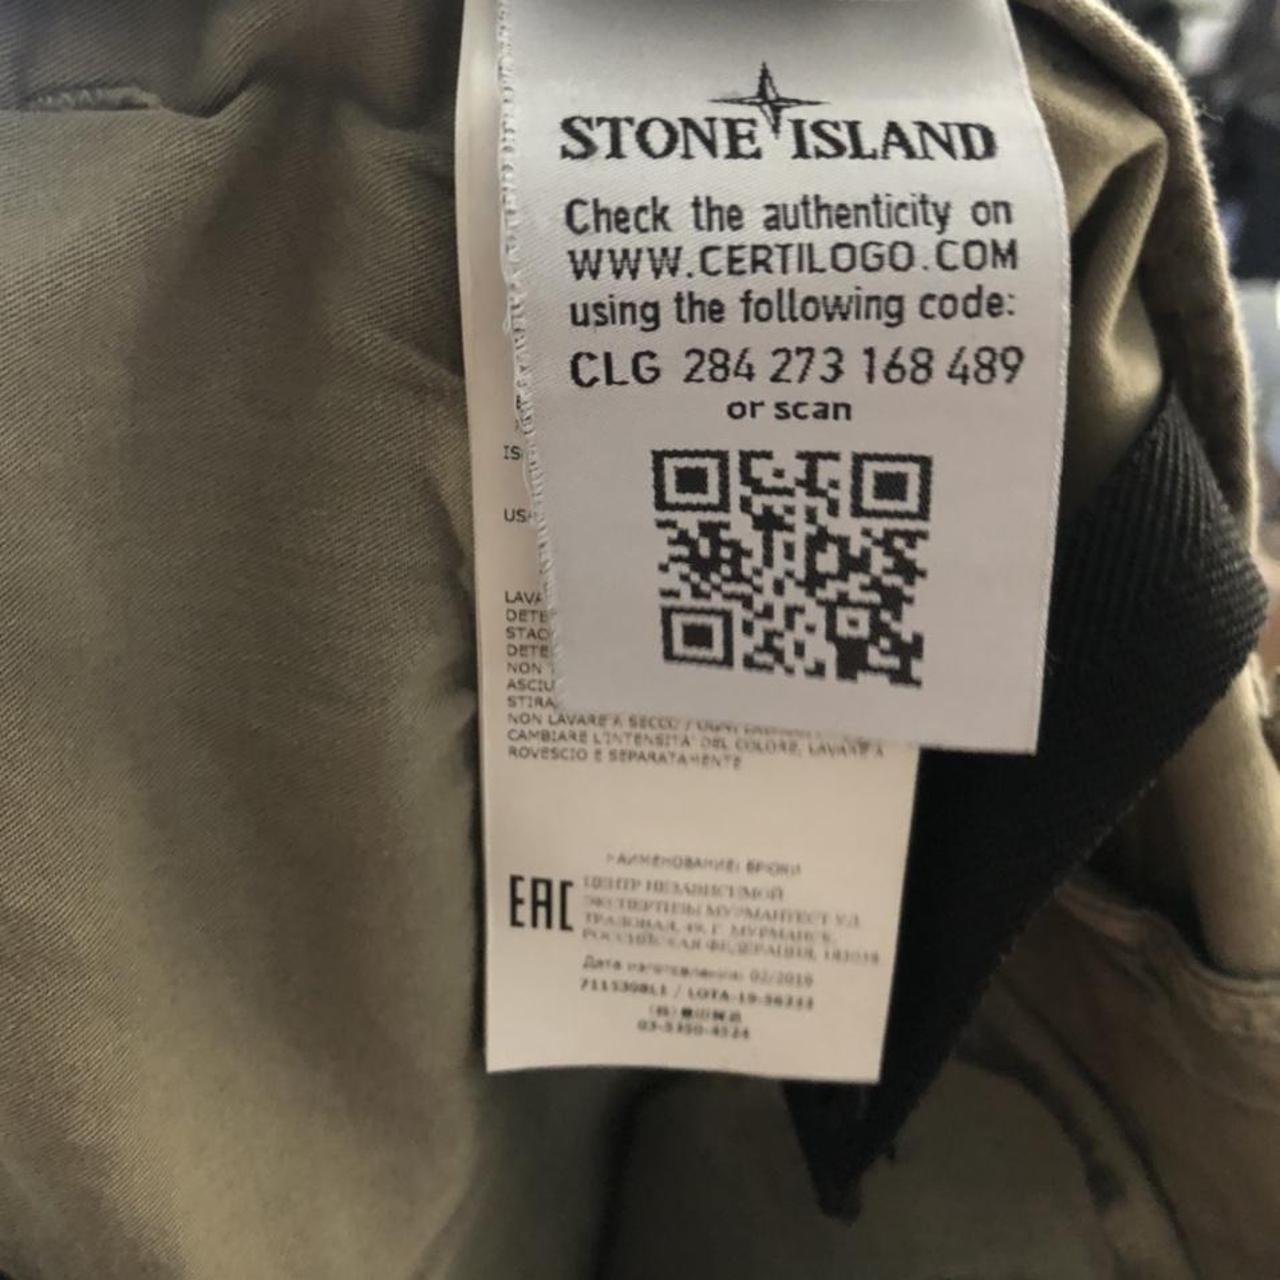 Stone Island Stone Island Cargo SL 32/34 (2018... - Depop